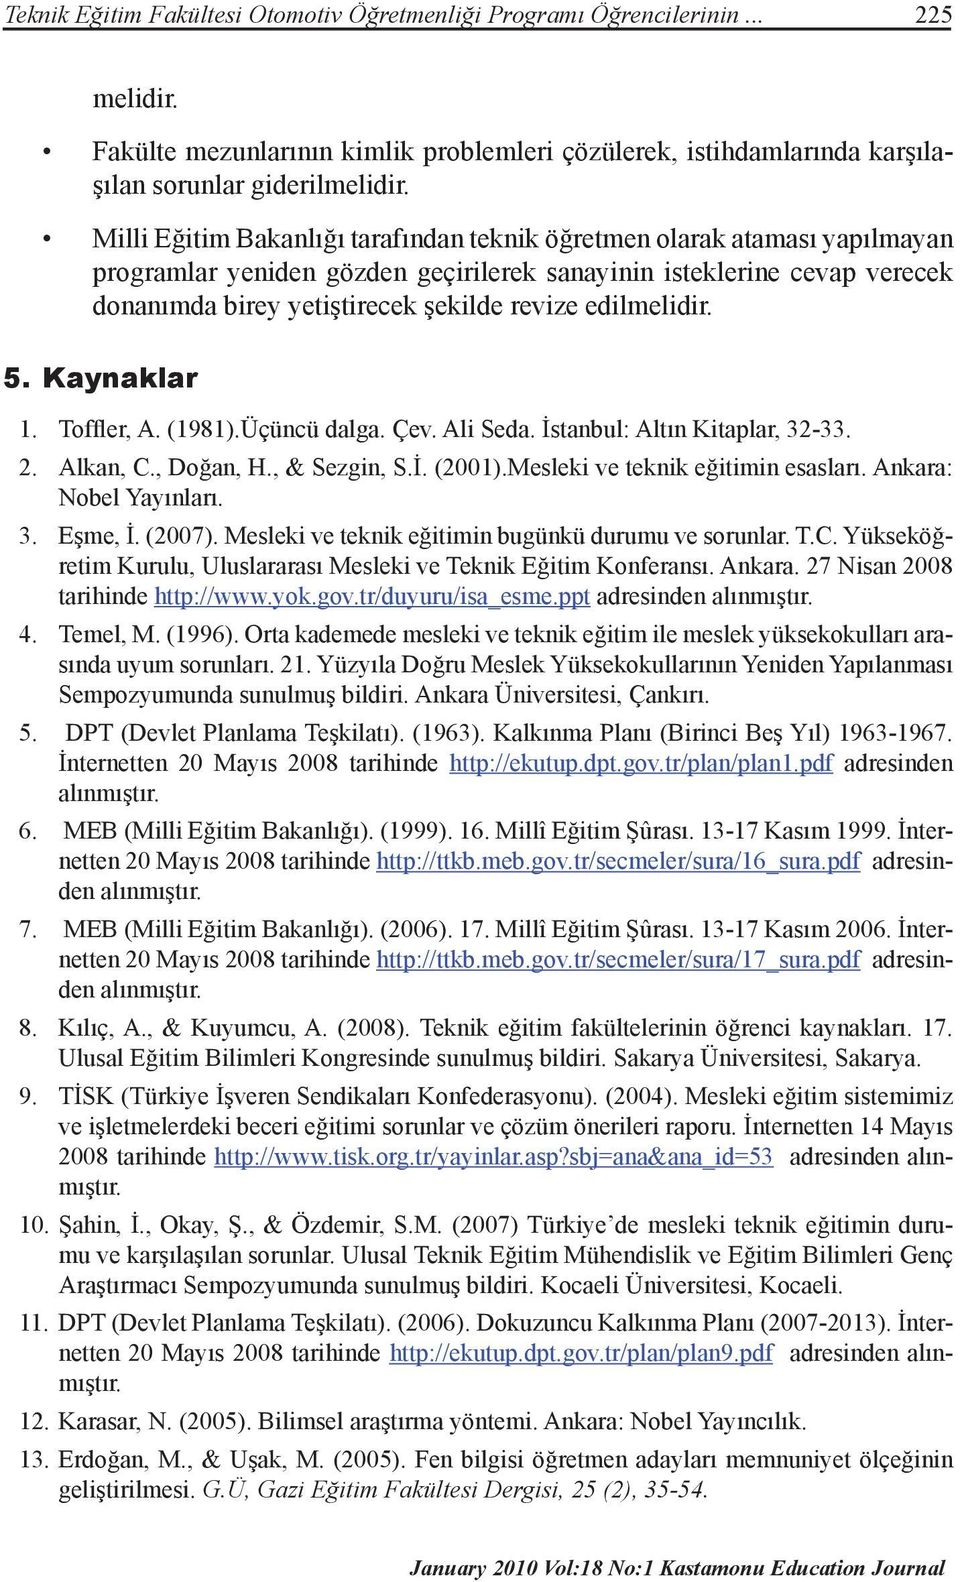 edilmelidir. 5. Kaynaklar 1. Toffler, A. (1981).Üçüncü dalga. Çev. Ali Seda. İstanbul: Altın Kitaplar, 32-33. 2. Alkan, C., Doğan, H., & Sezgin, S.İ. (2001).Mesleki ve teknik eğitimin esasları.